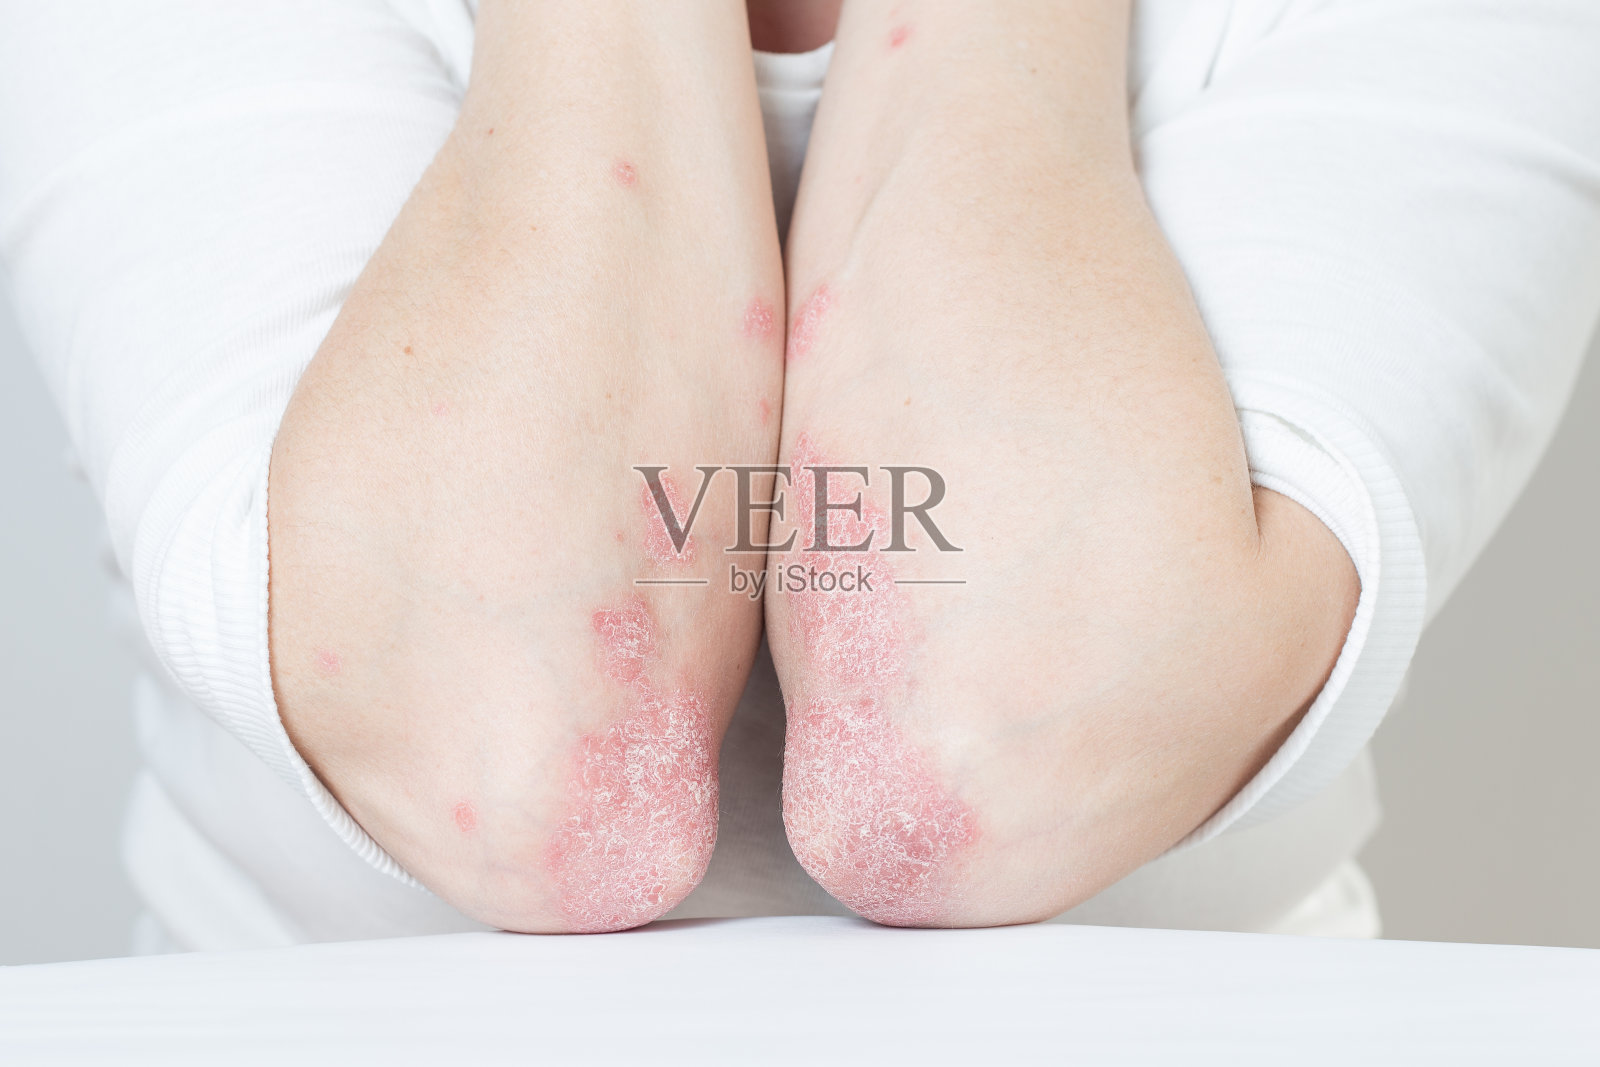 急性肘部银屑病是一种自身免疫性不可治愈的皮肤病。膝盖上有大片红肿片状皮疹。受银屑病关节炎影响的关节照片摄影图片